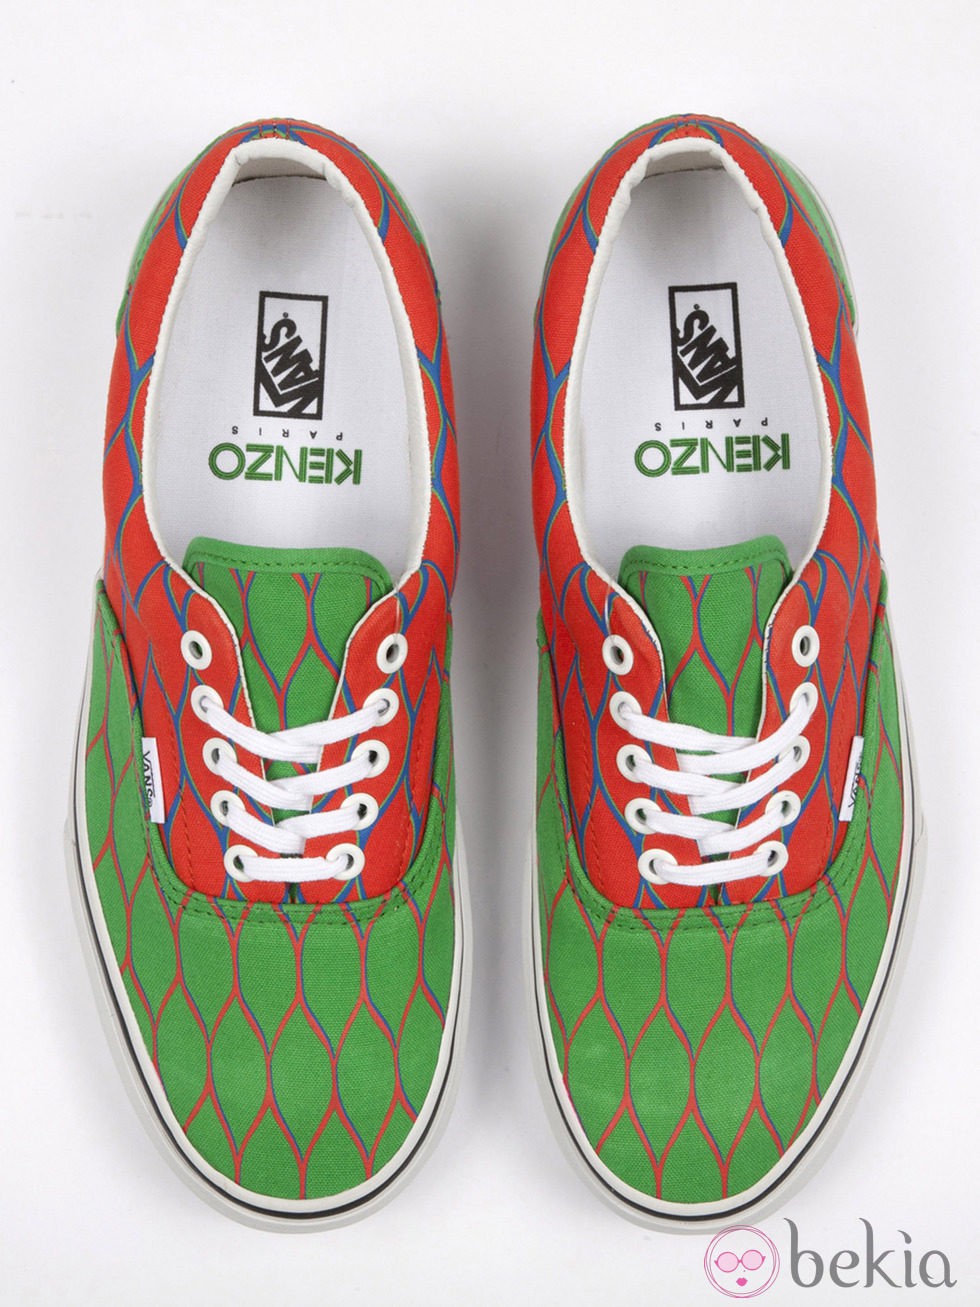 Nueva colección de zapatillas de VANS y KENZO primavera/verano 2012 en varios colores